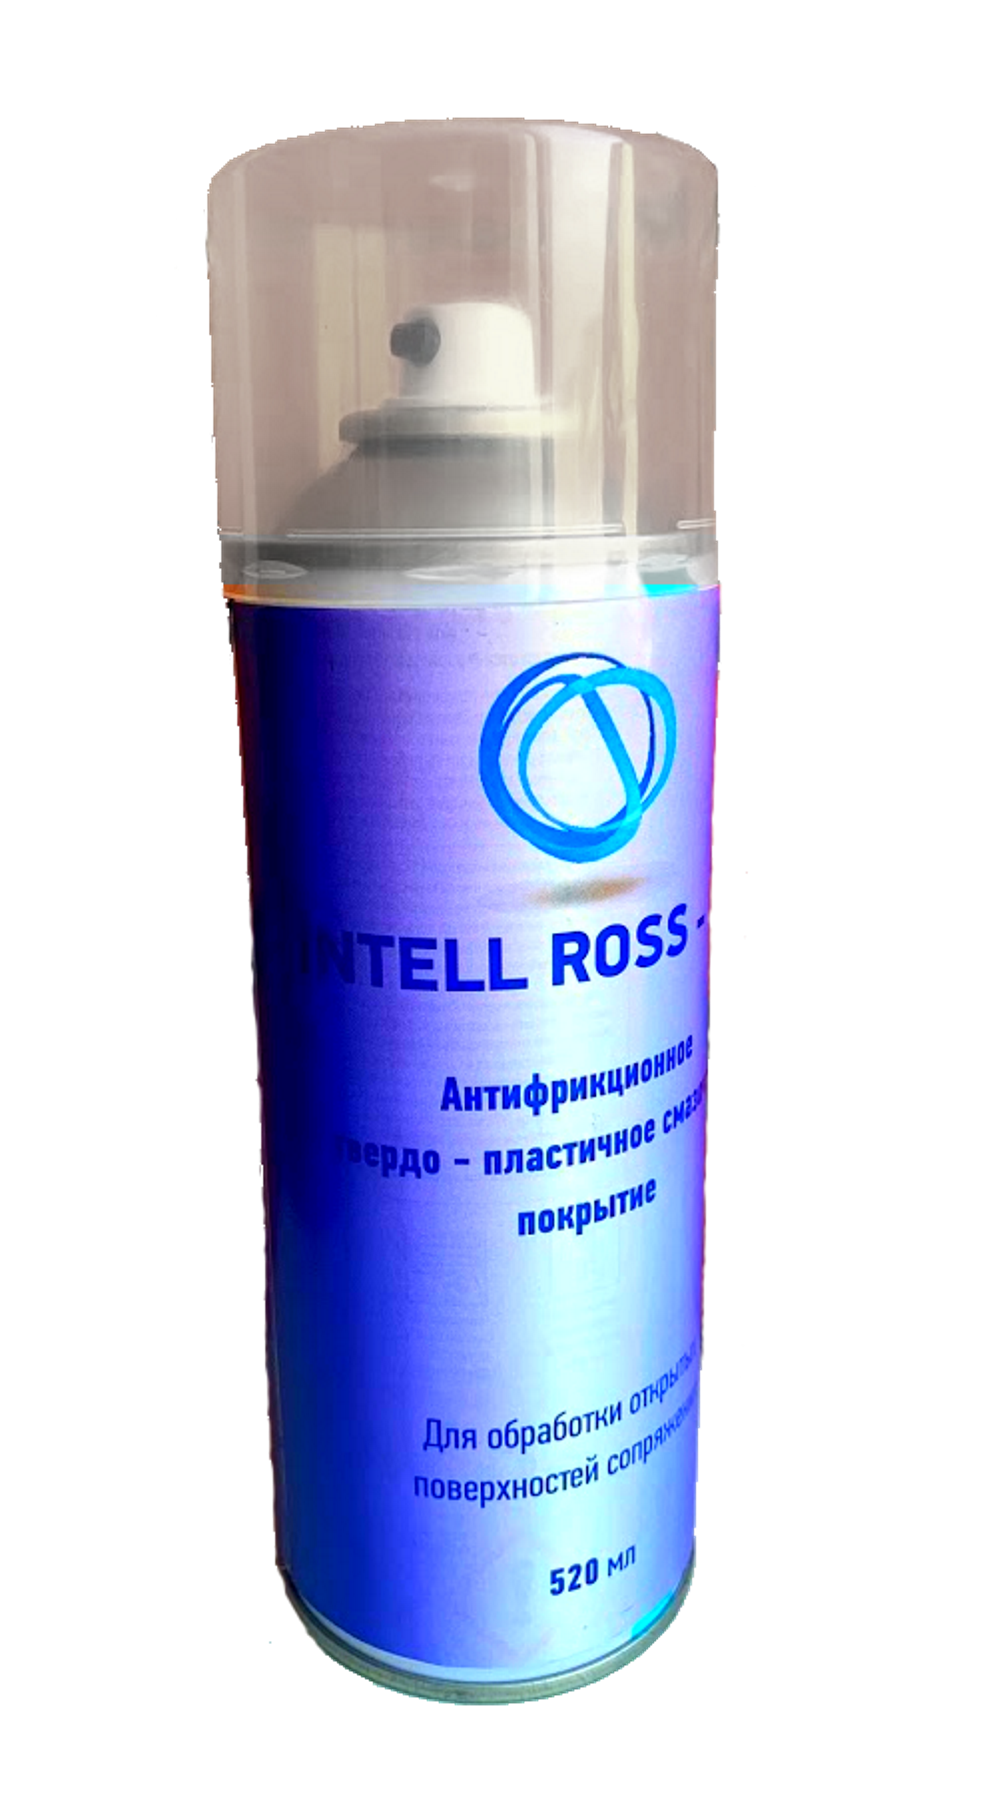 Антифрикционное твердо-пластичное смазочное покрытие (АТПС) INTELL ROSS .